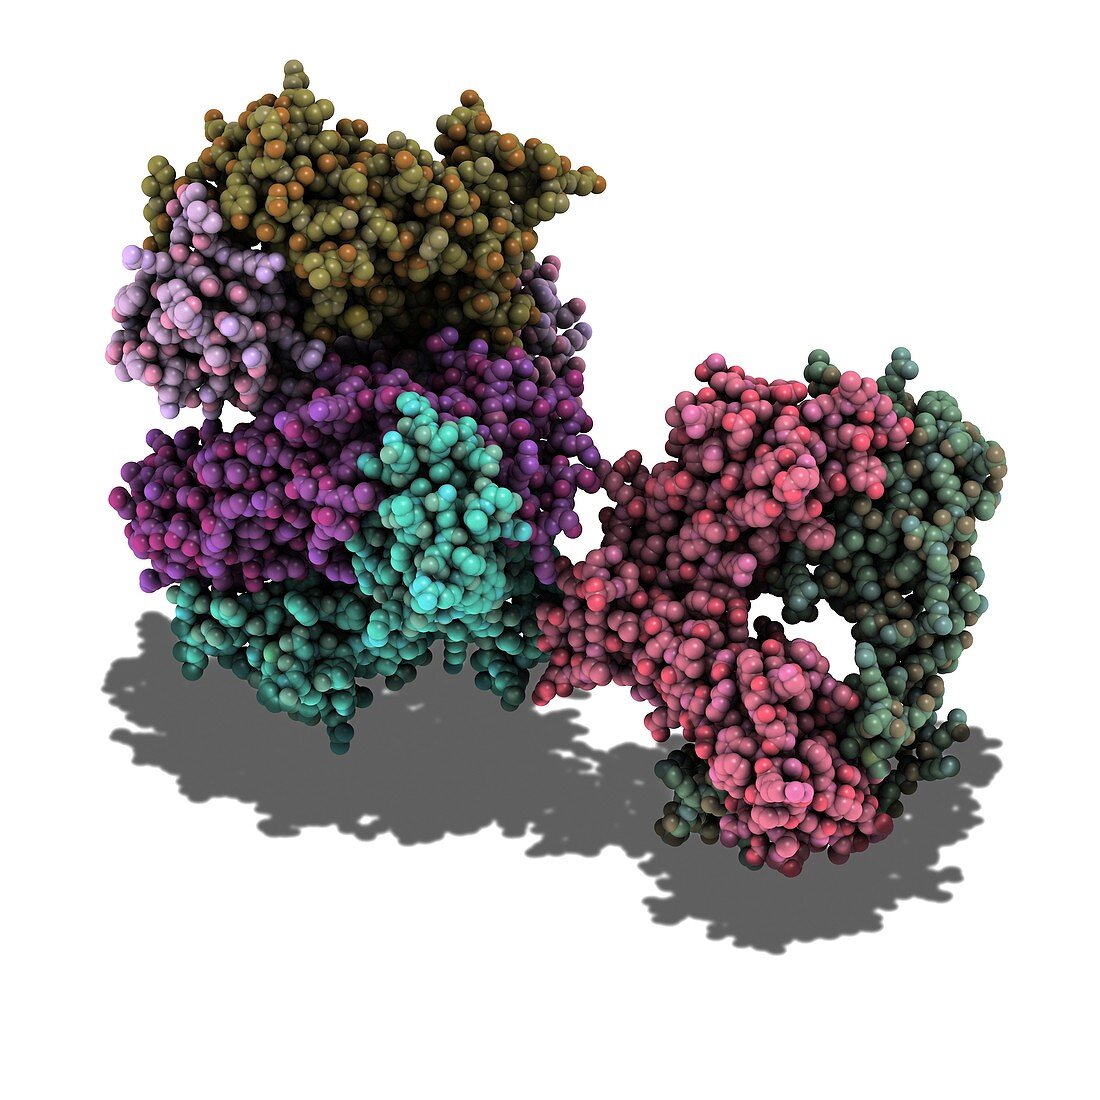 T cell receptor,molecular model